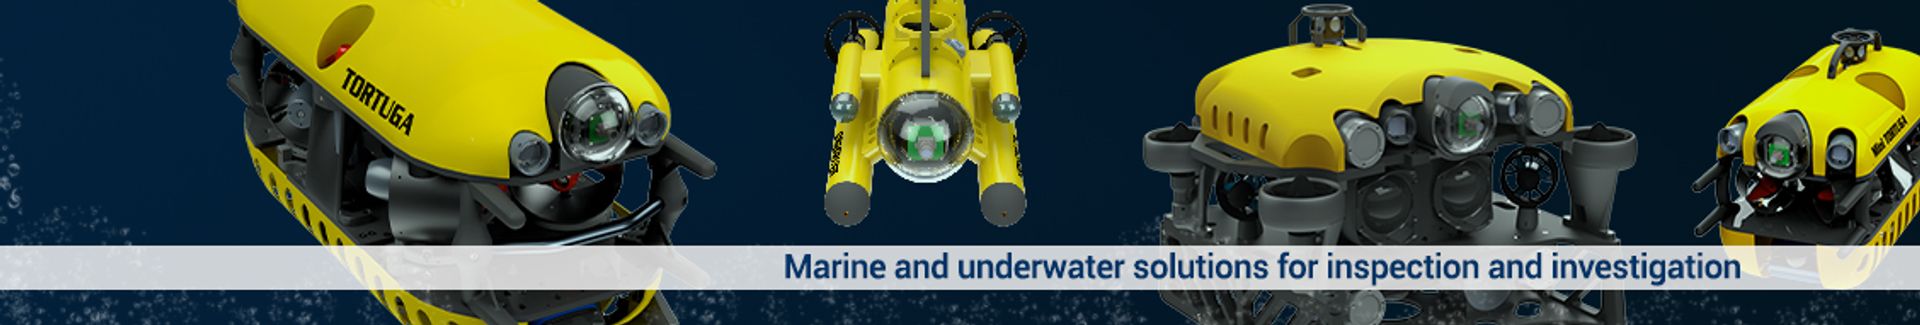 Subsea Tech